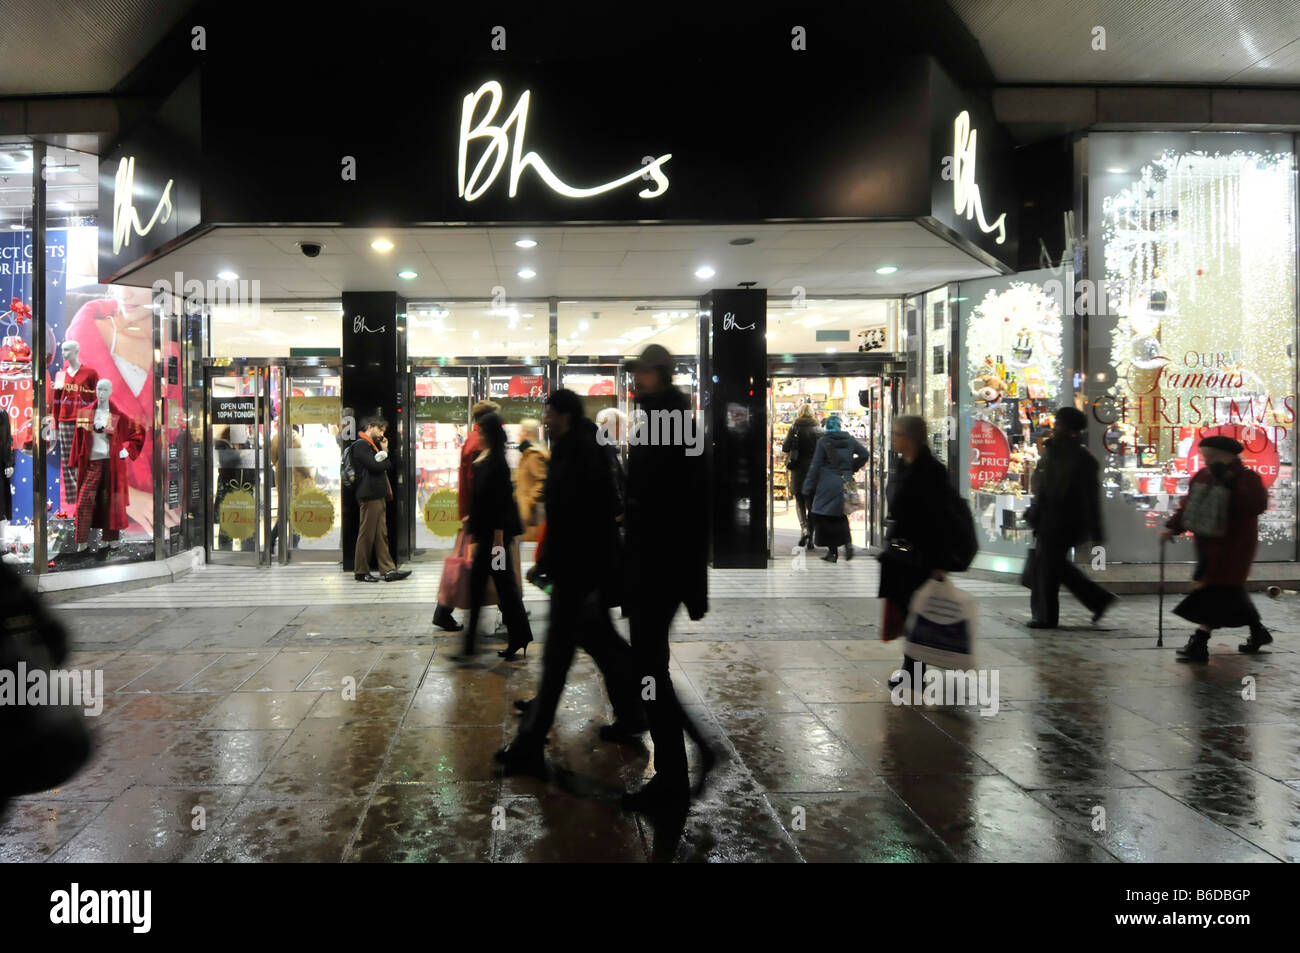 Londres Oxford Street silhouette shoppers marchant sur un trottoir humide West End BHS British Home Stores Retail business shop front sign rue commerçante UK Banque D'Images